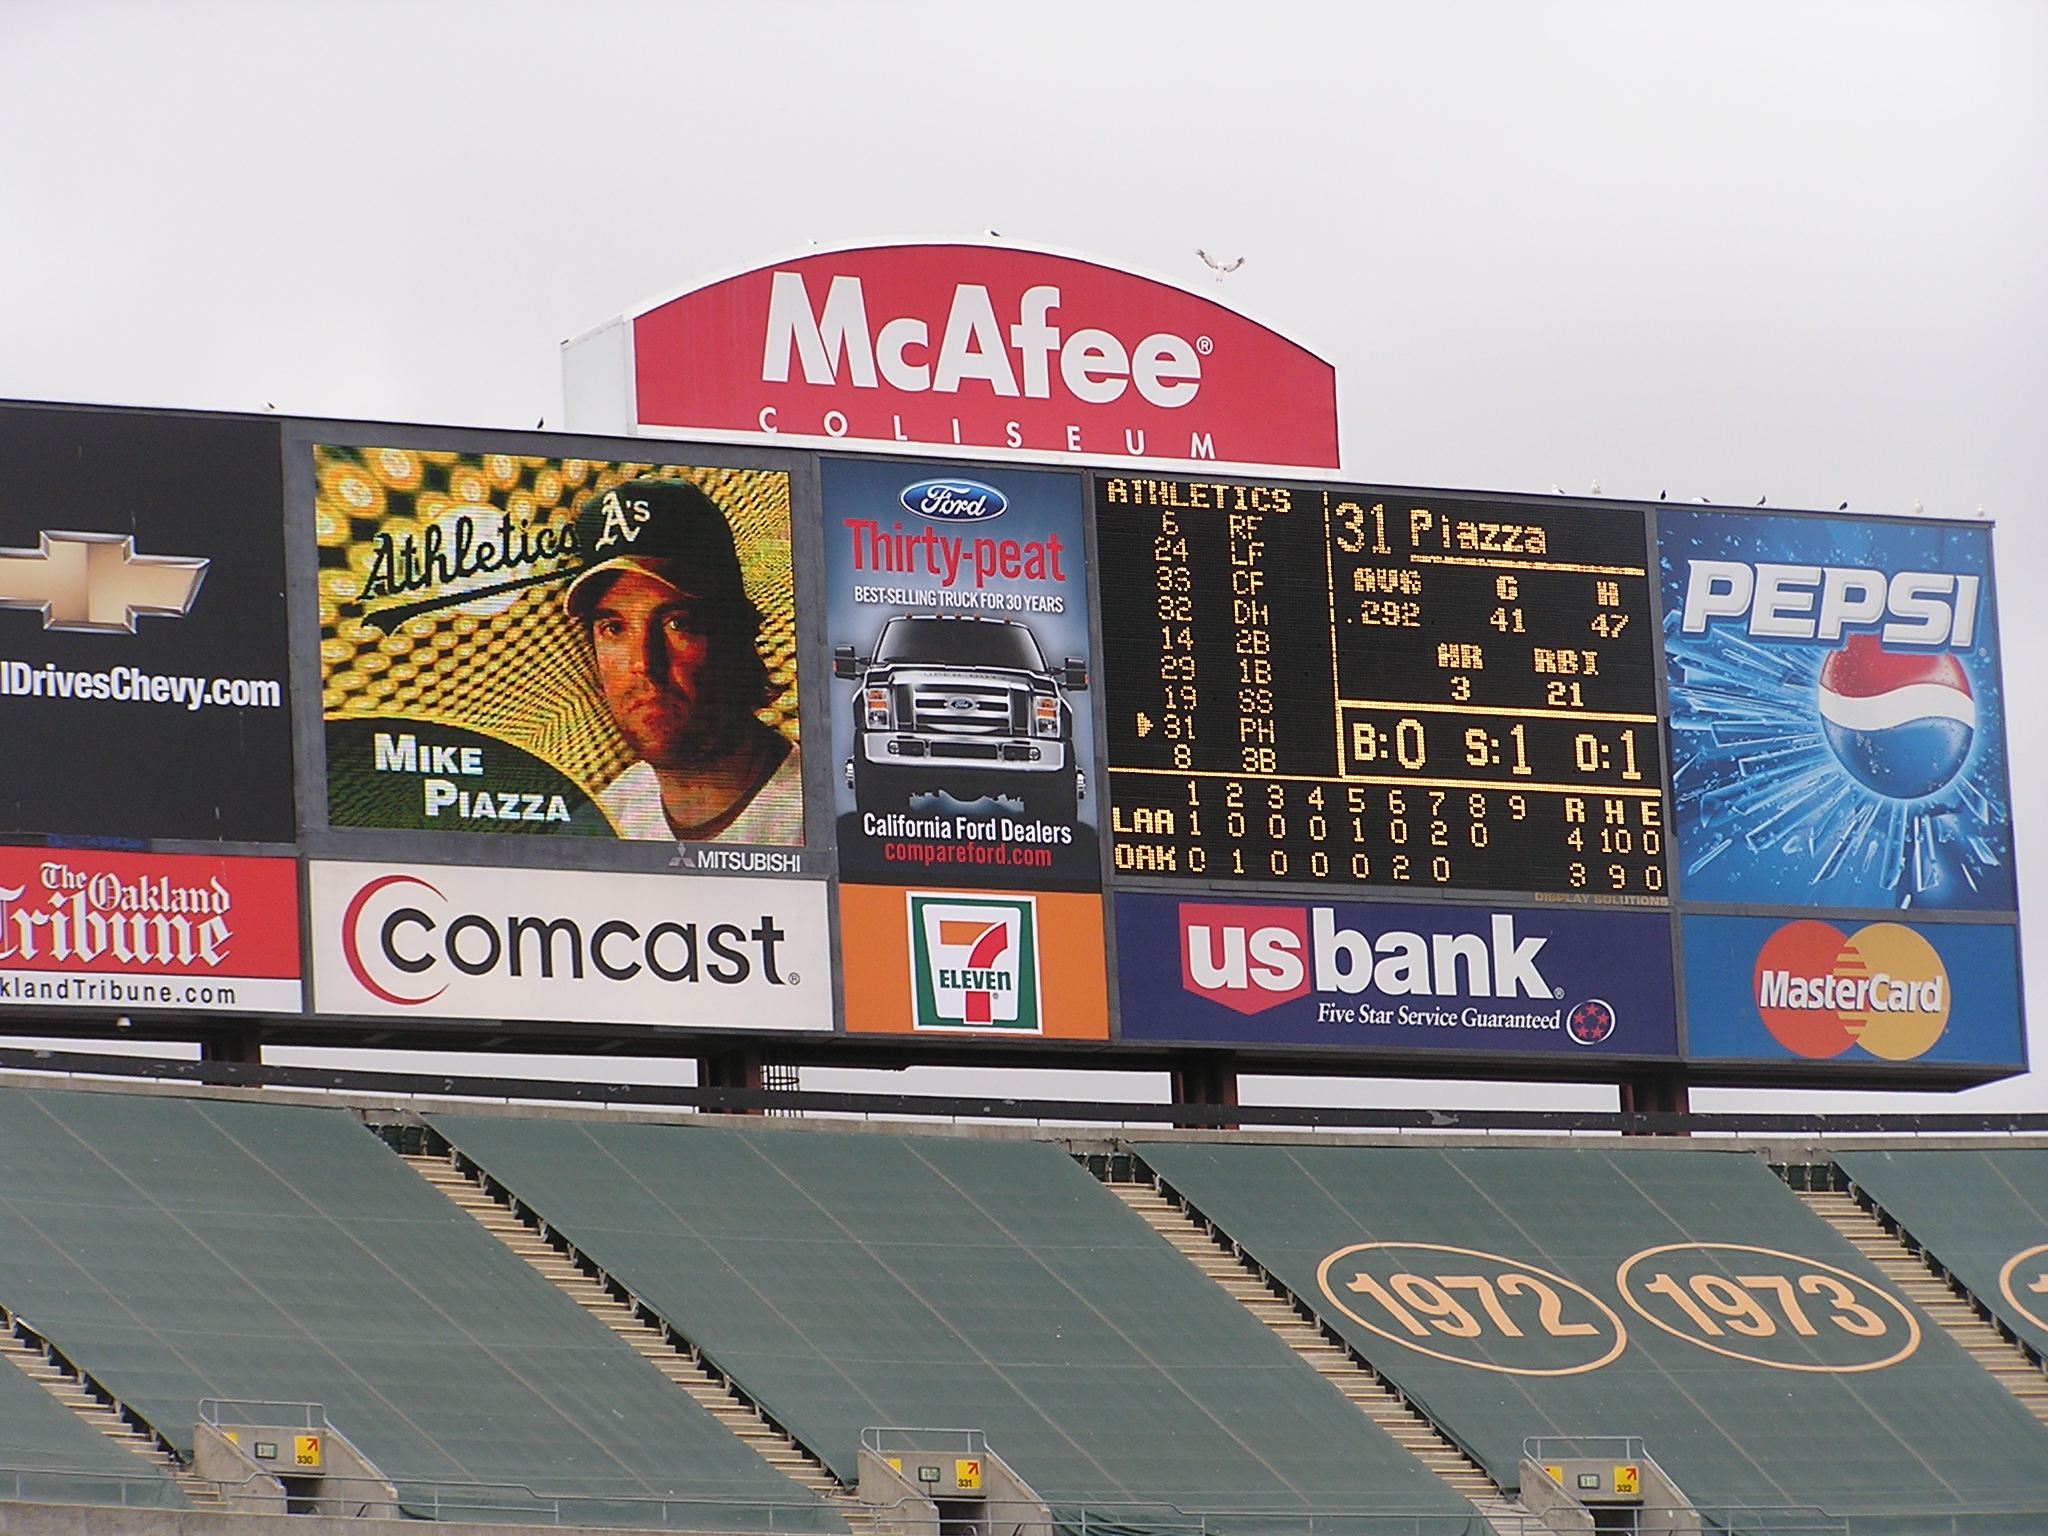 The Scoreboard in Oakland